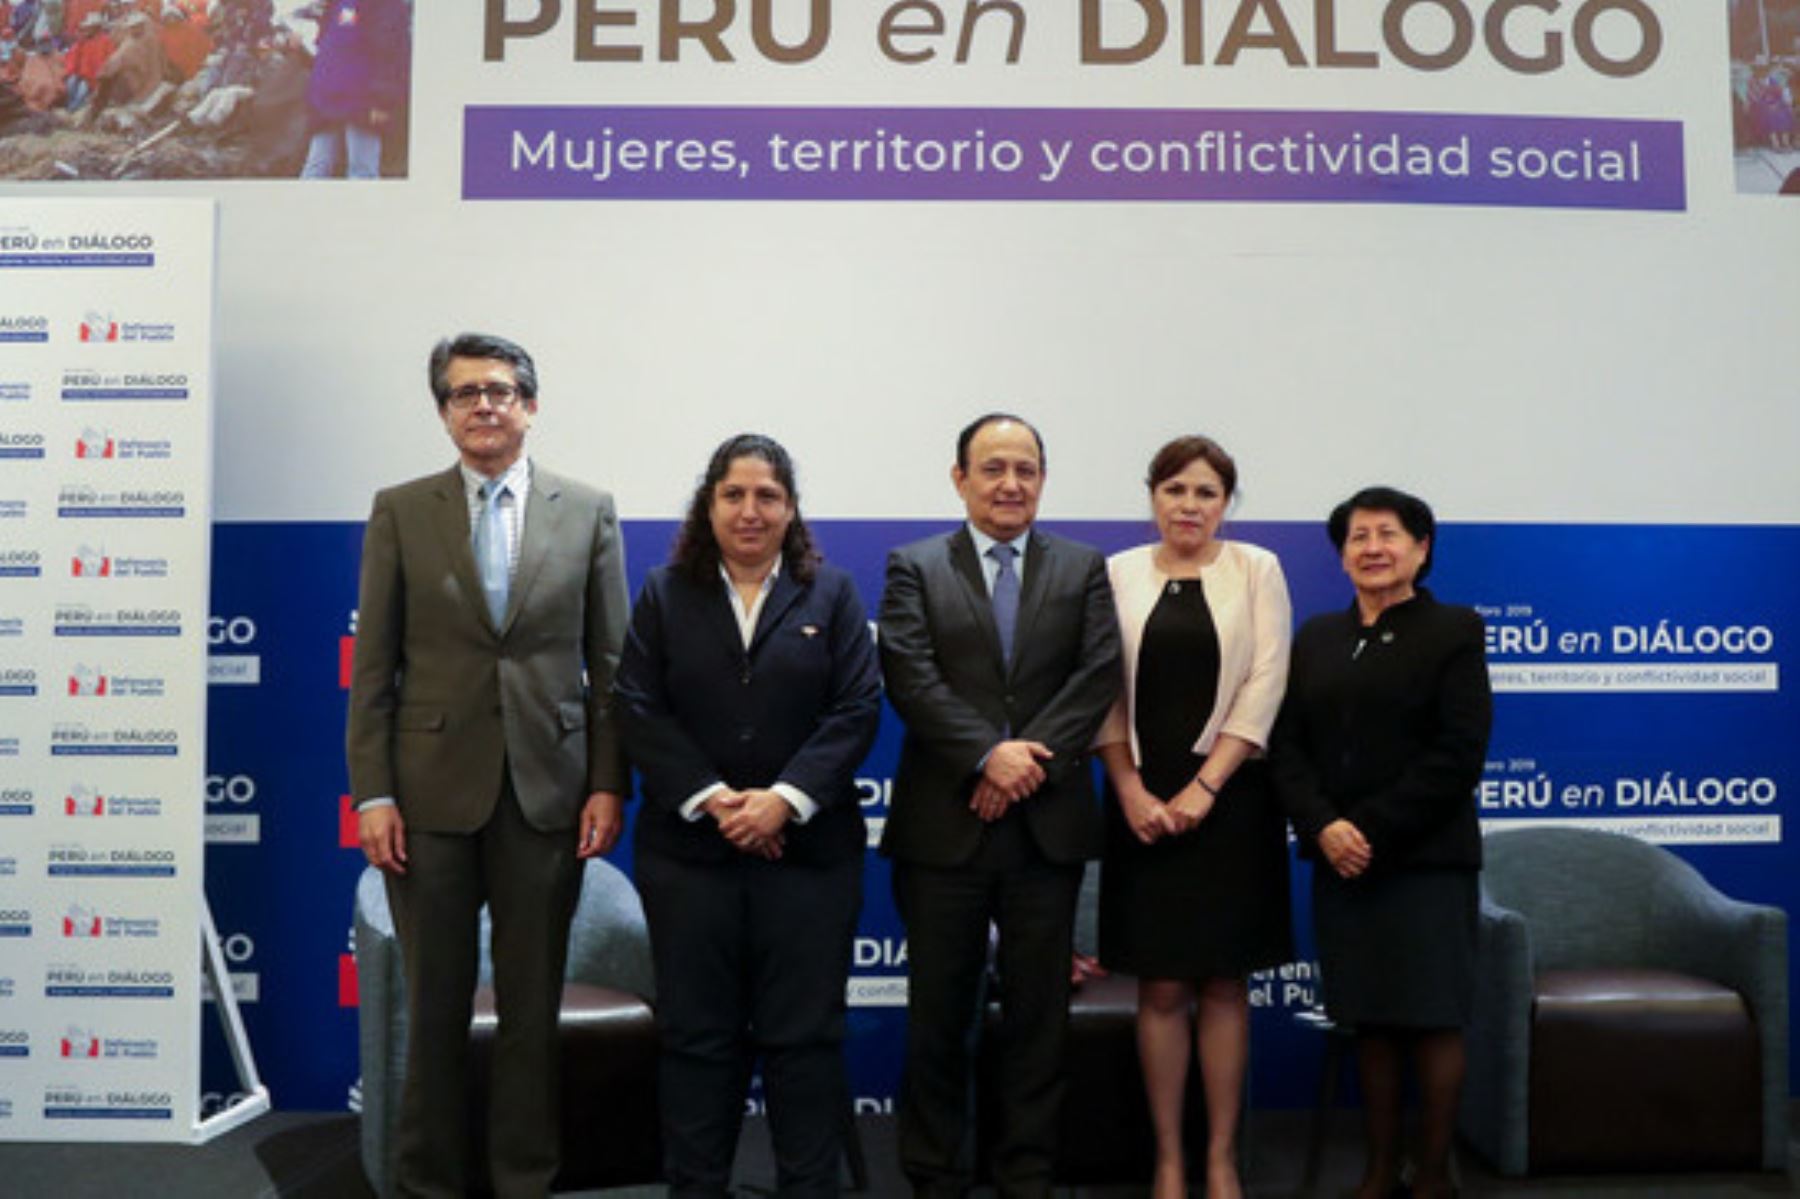 La ministra del Ambiente, Fabiola Muñoz, fue panelista en el Tercer Foro Perú en Diálogo “Mujeres, territorio y conflictividad social”.